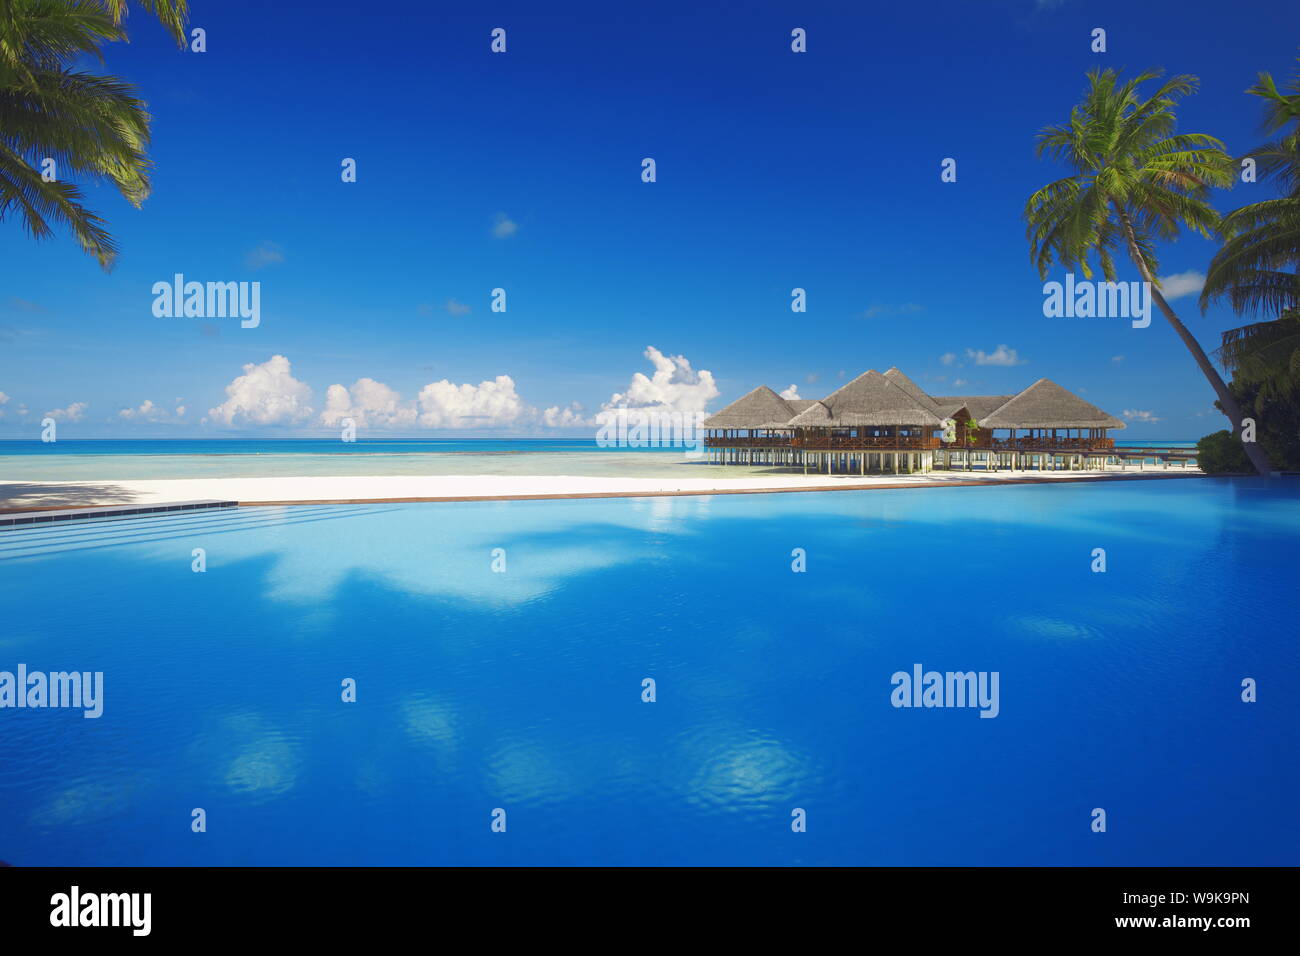 Piscine, palmiers et de cabines de plage, Maldives, océan Indien, Asie Banque D'Images